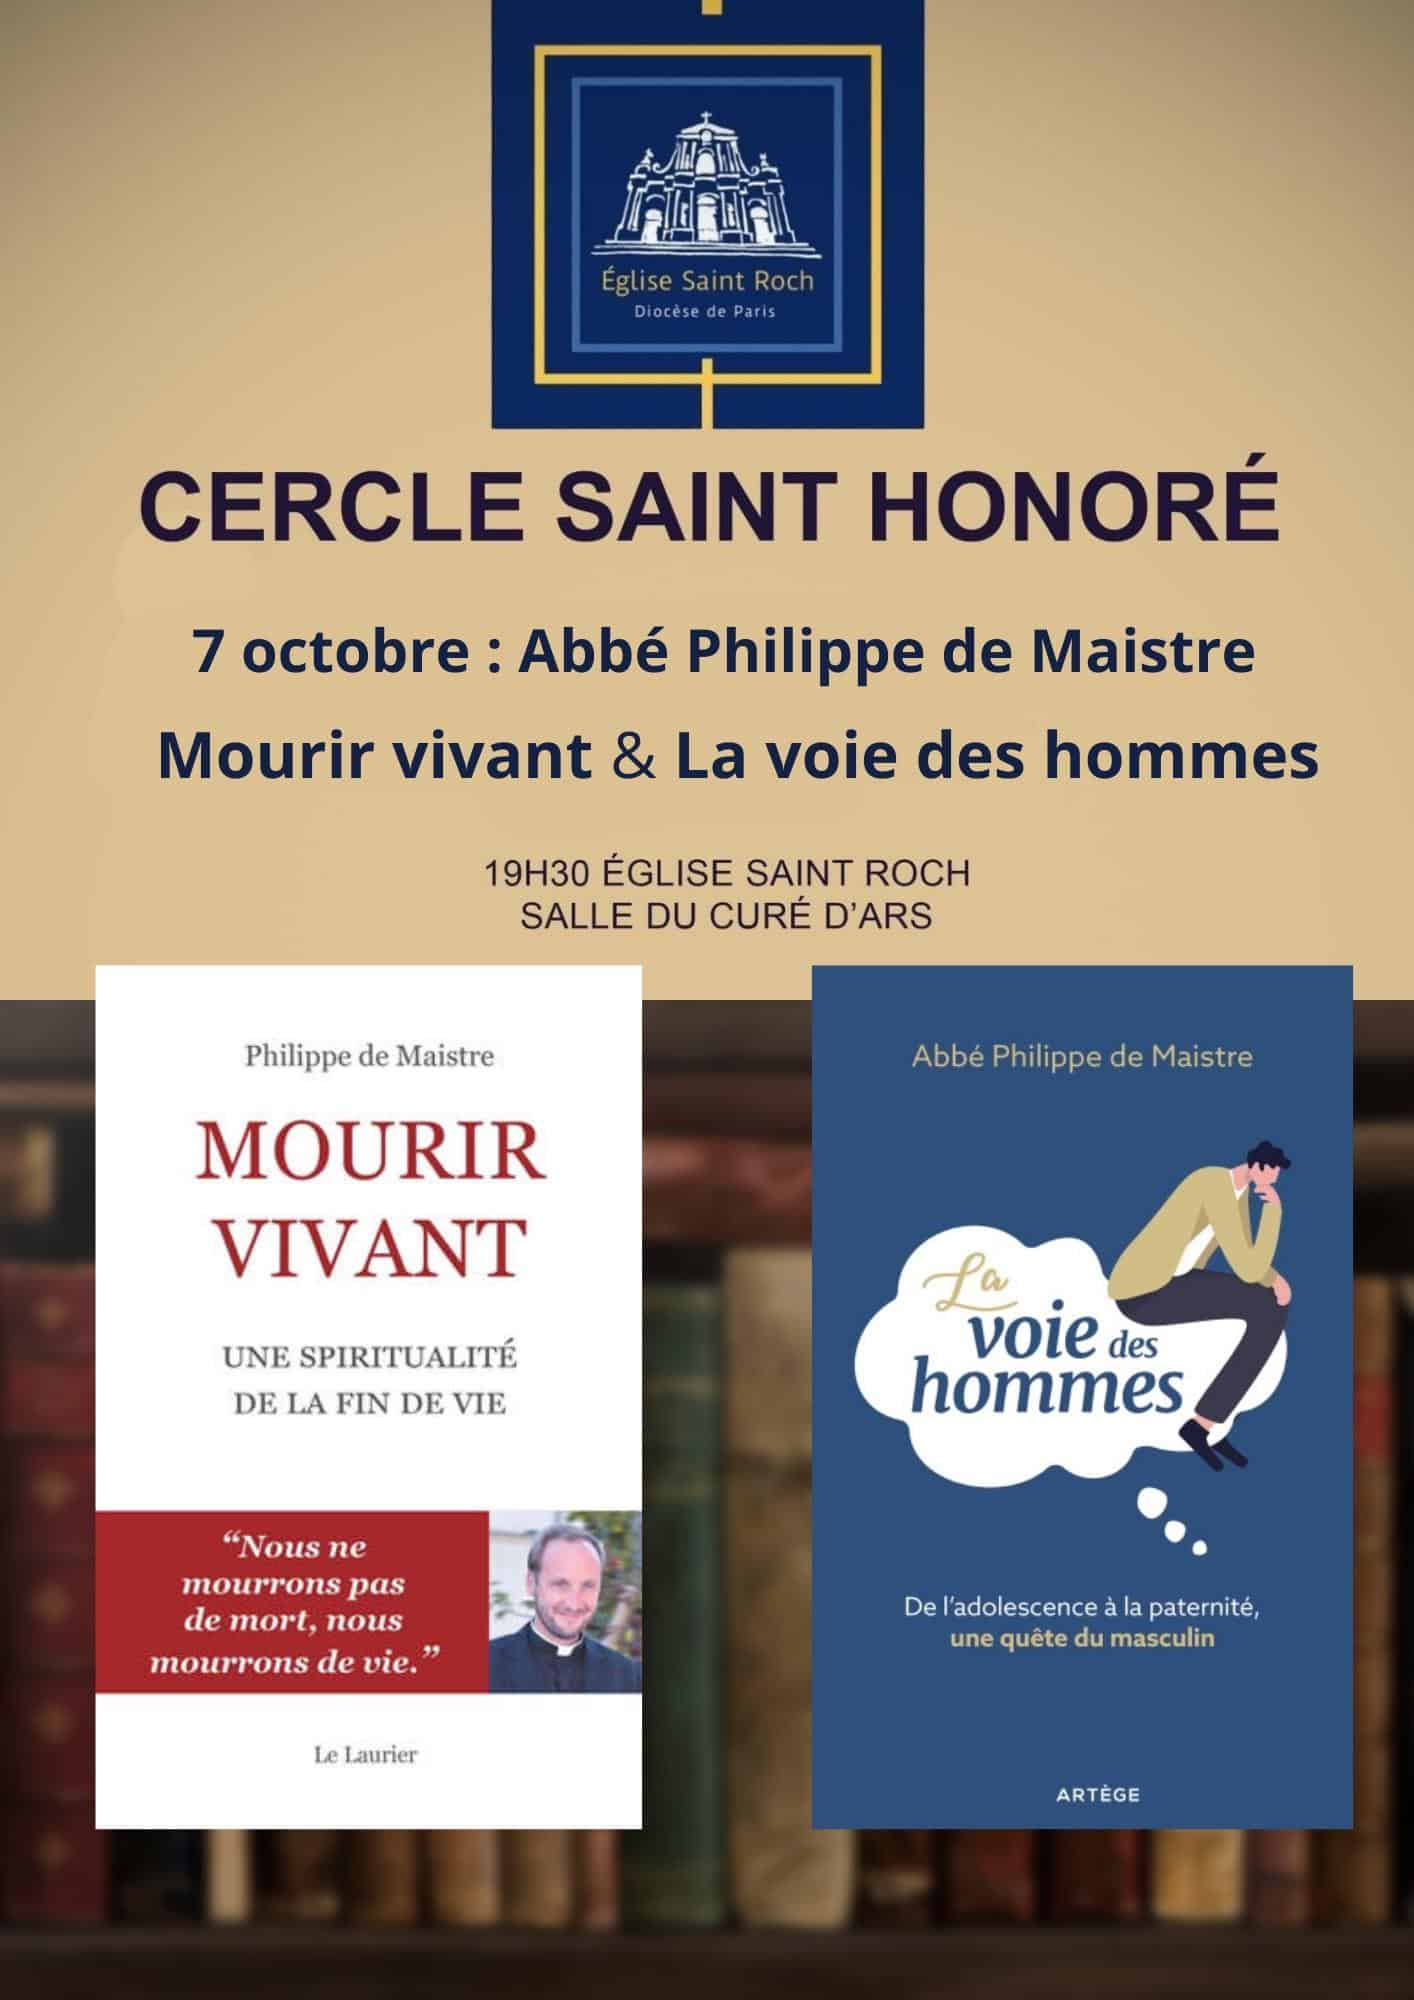 Cercle Saint Honoré 